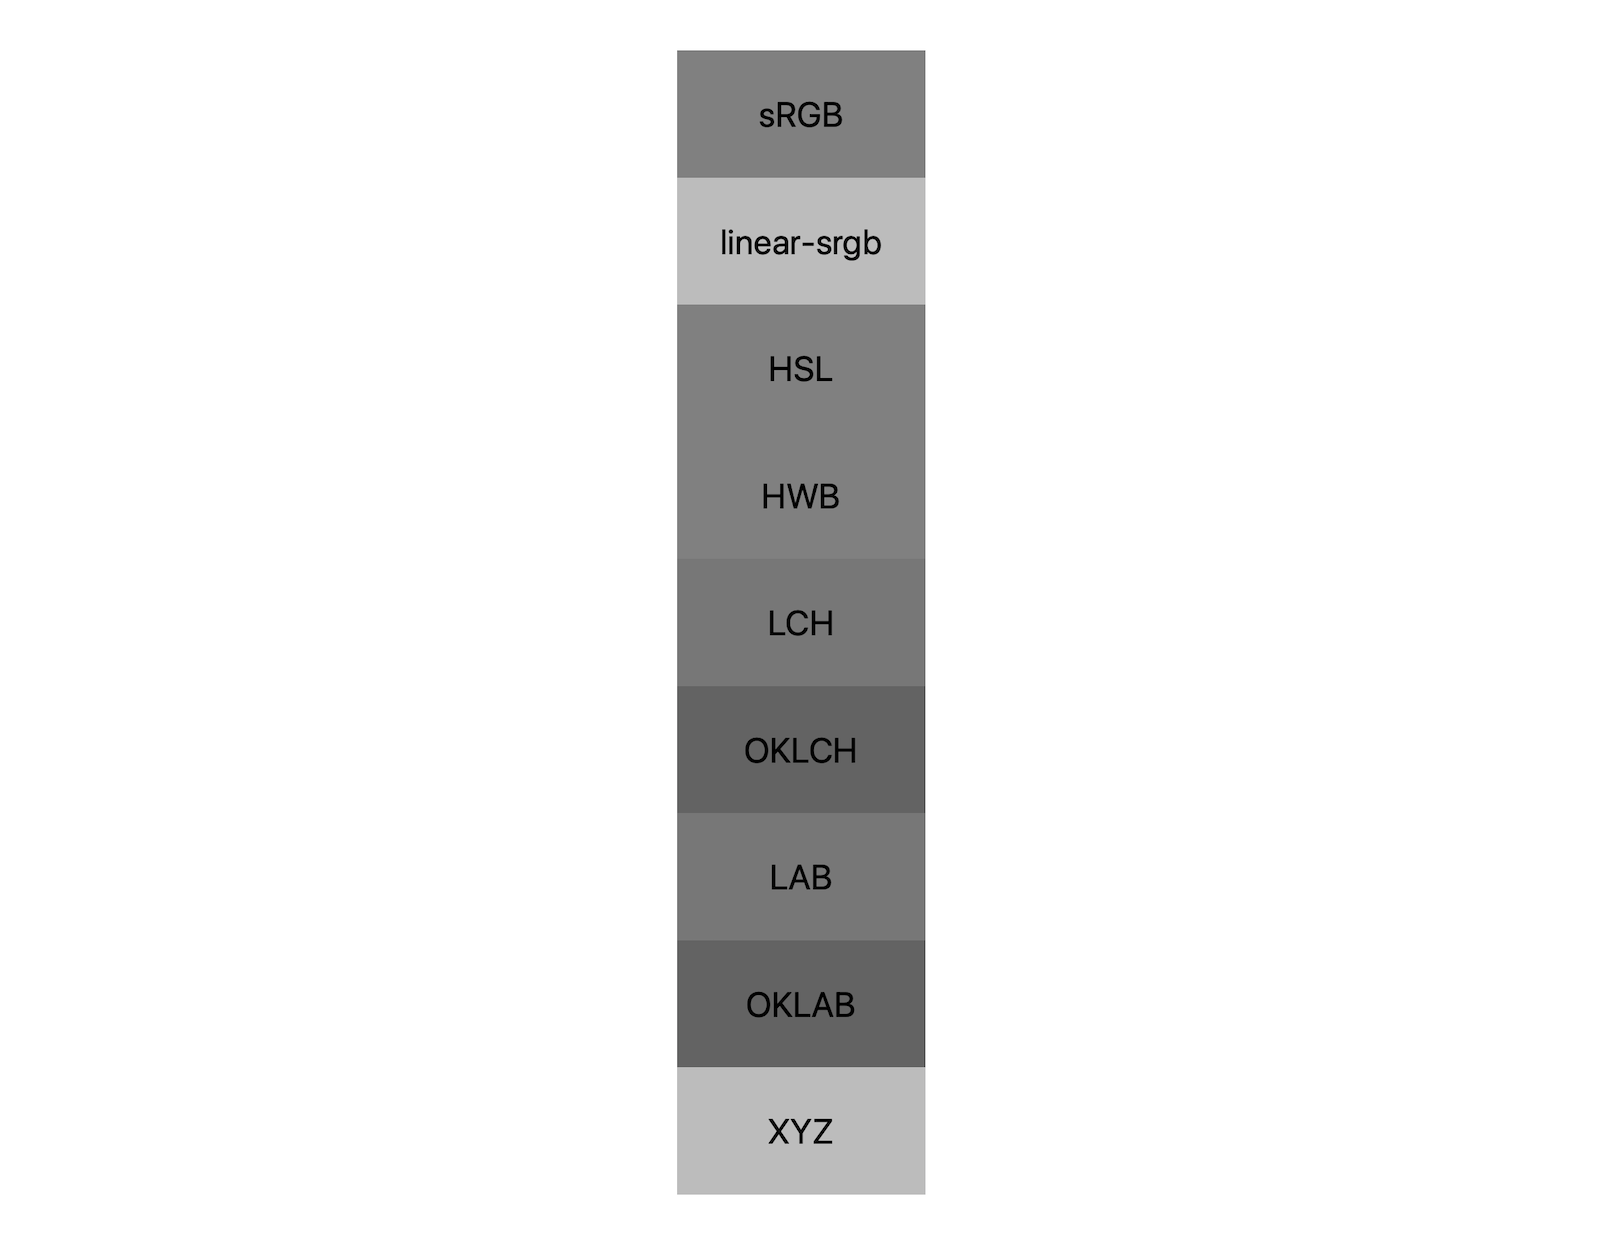 7 فضای رنگی (srgb، خطی-srgb، lch، oklch، lab، oklab، xyz) هر کدام نتایج خود را از ترکیب سیاه و سفید نشان می دهند. تقریباً 5 سایه مختلف نشان داده شده است، که نشان می دهد هر فضای رنگی حتی به رنگ خاکستری به طور متفاوتی ترکیب می شود.